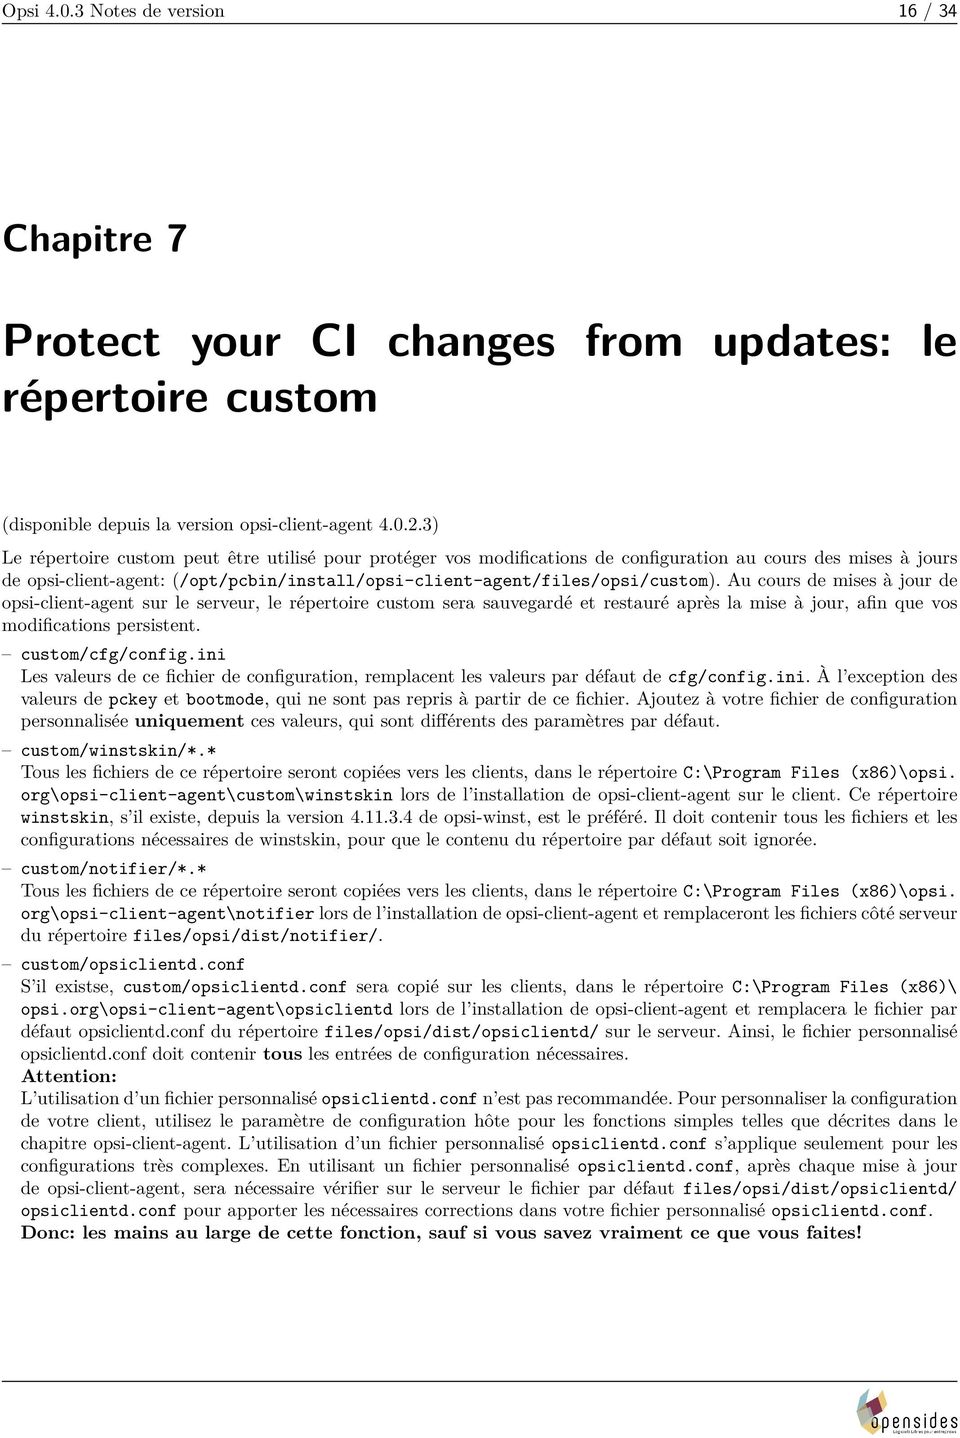 Au cours de mises à jour de opsi-client-agent sur le serveur, le répertoire custom sera sauvegardé et restauré après la mise à jour, afin que vos modifications persistent. custom/cfg/config.